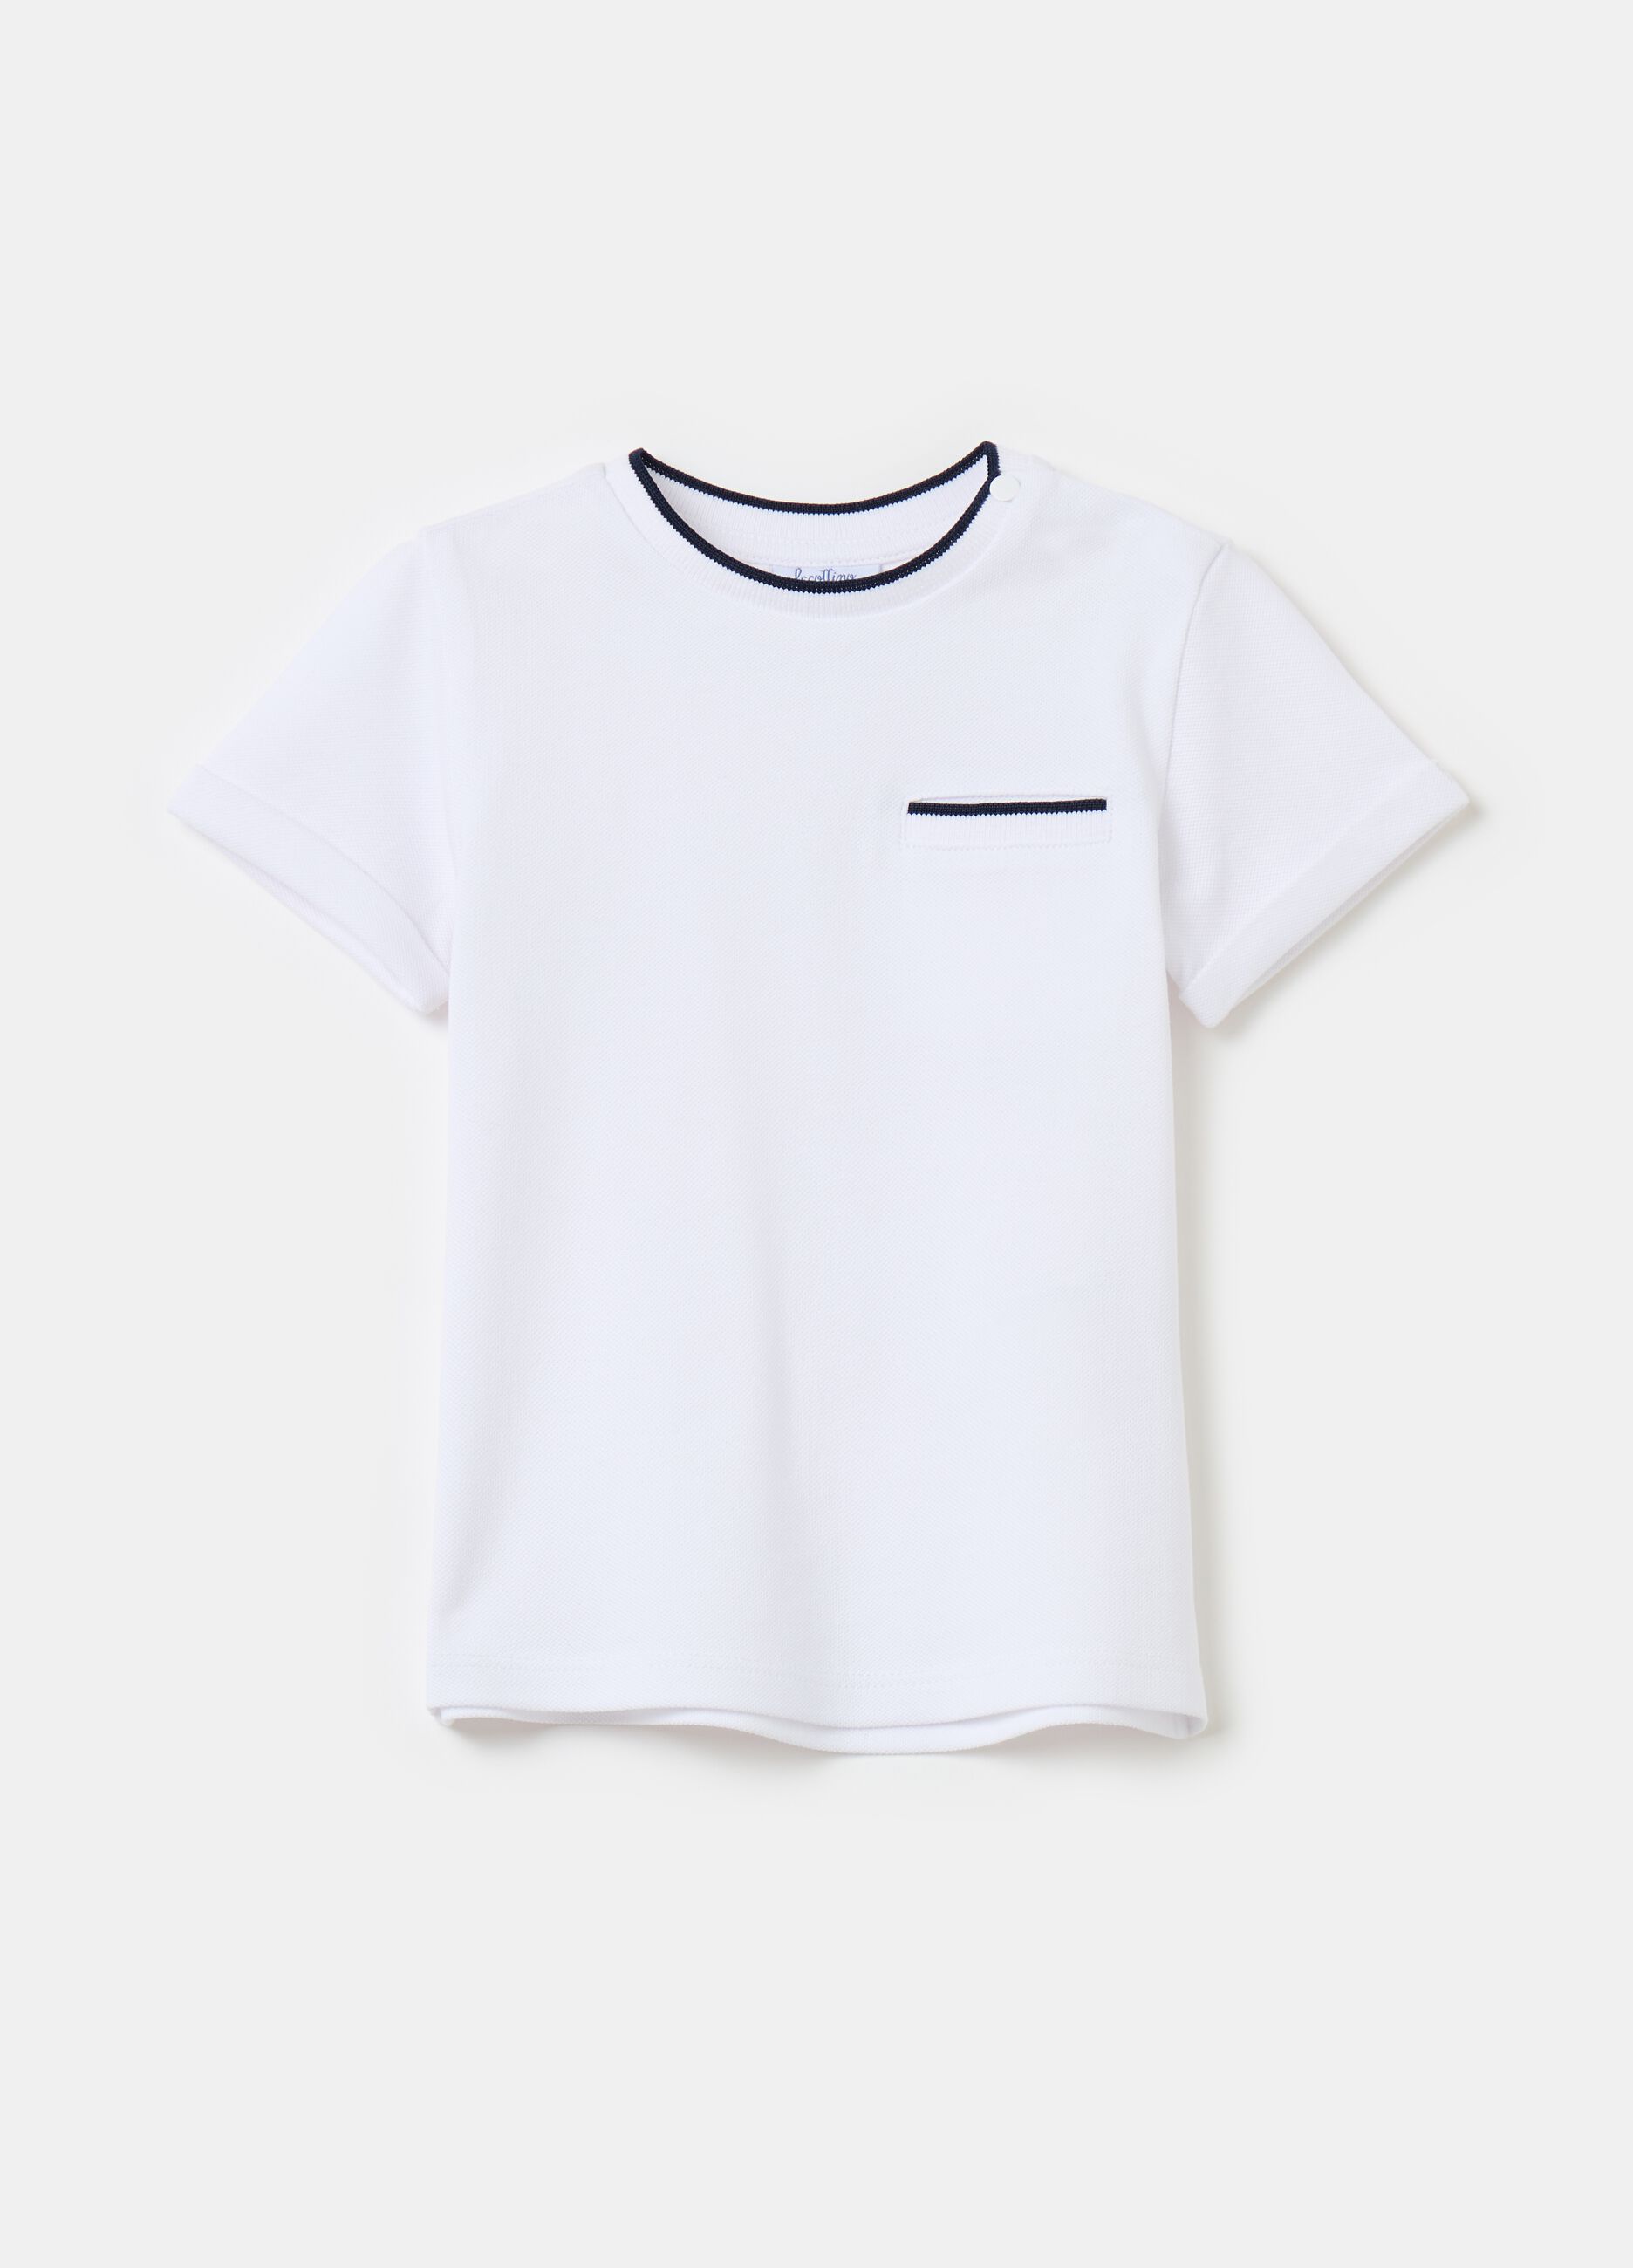 Piquet T-shirt with pocket